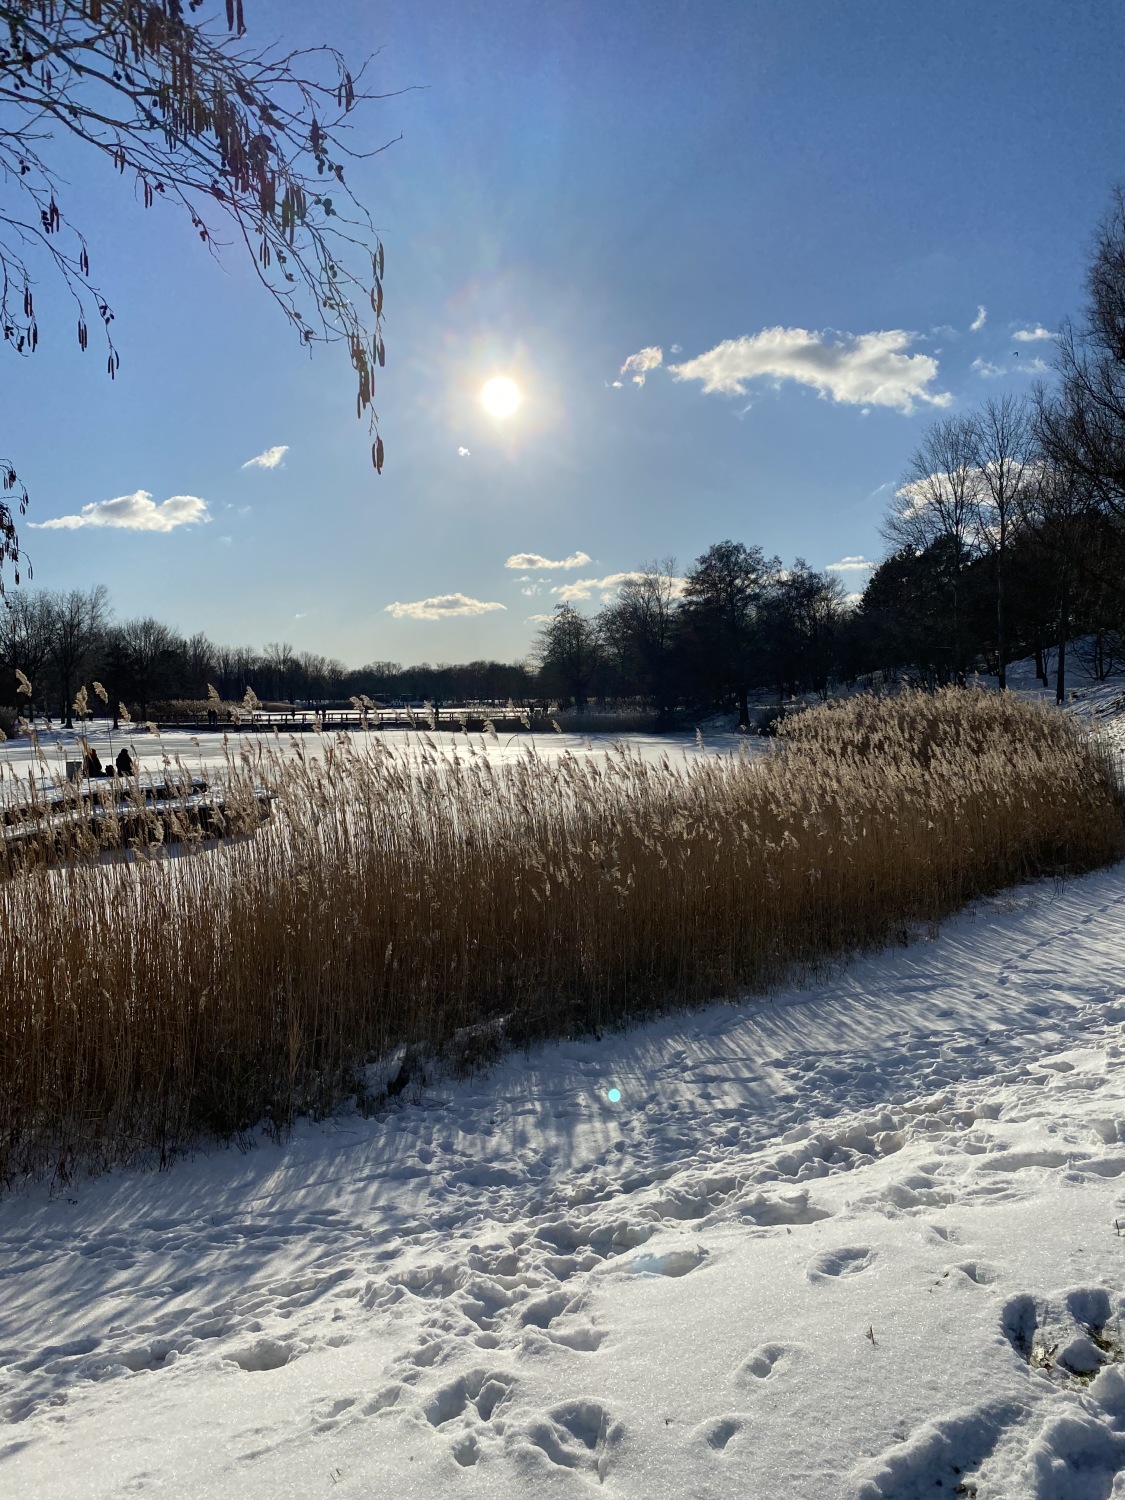 Im Vordergrund ganz viel Schnee. Es sind einige Fußstapfen darin zu sehen. Hinter dem Schnee braunes Schilf. Dahinter eine vereiste Schneefläche. Darum Bäume. Der Himmel ist blau und in der Mitte des BIldes sieht man die Sonne. Rechts und links von der Sonne kleine Wolken. Auf der linken Bildseite hängt ein belaubter Ast ins Bild. 